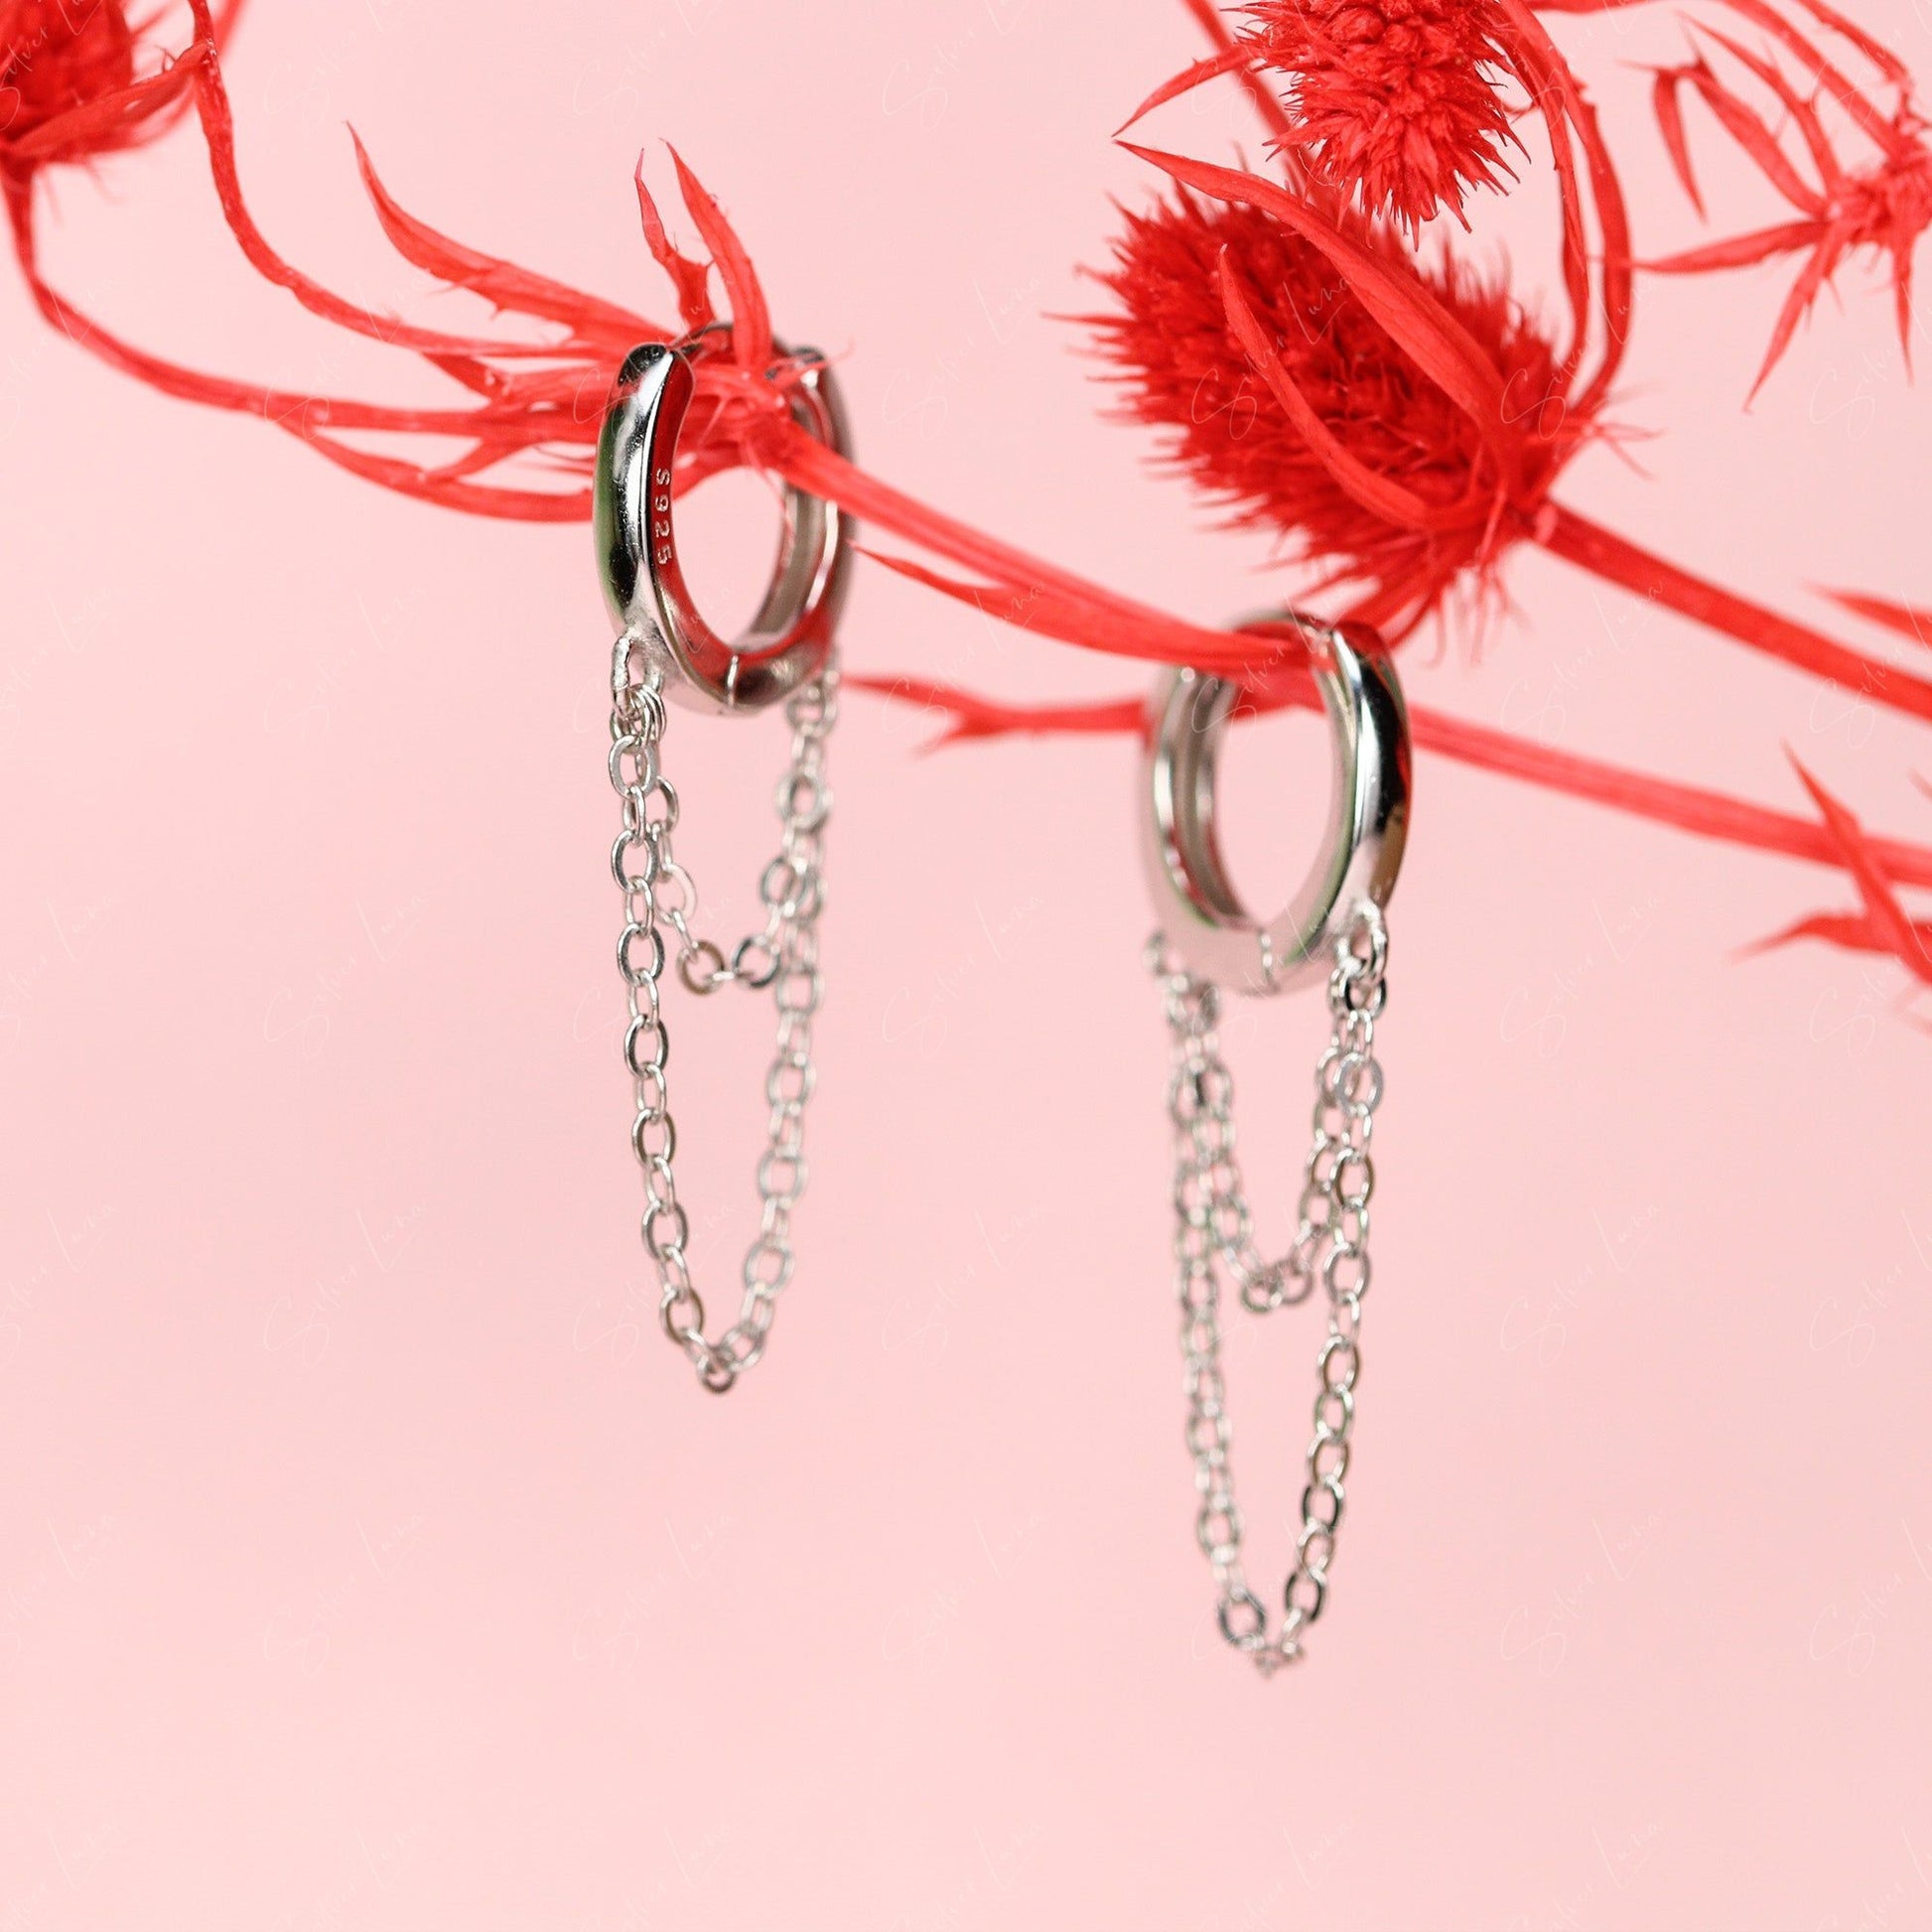 hoop earrings with chain